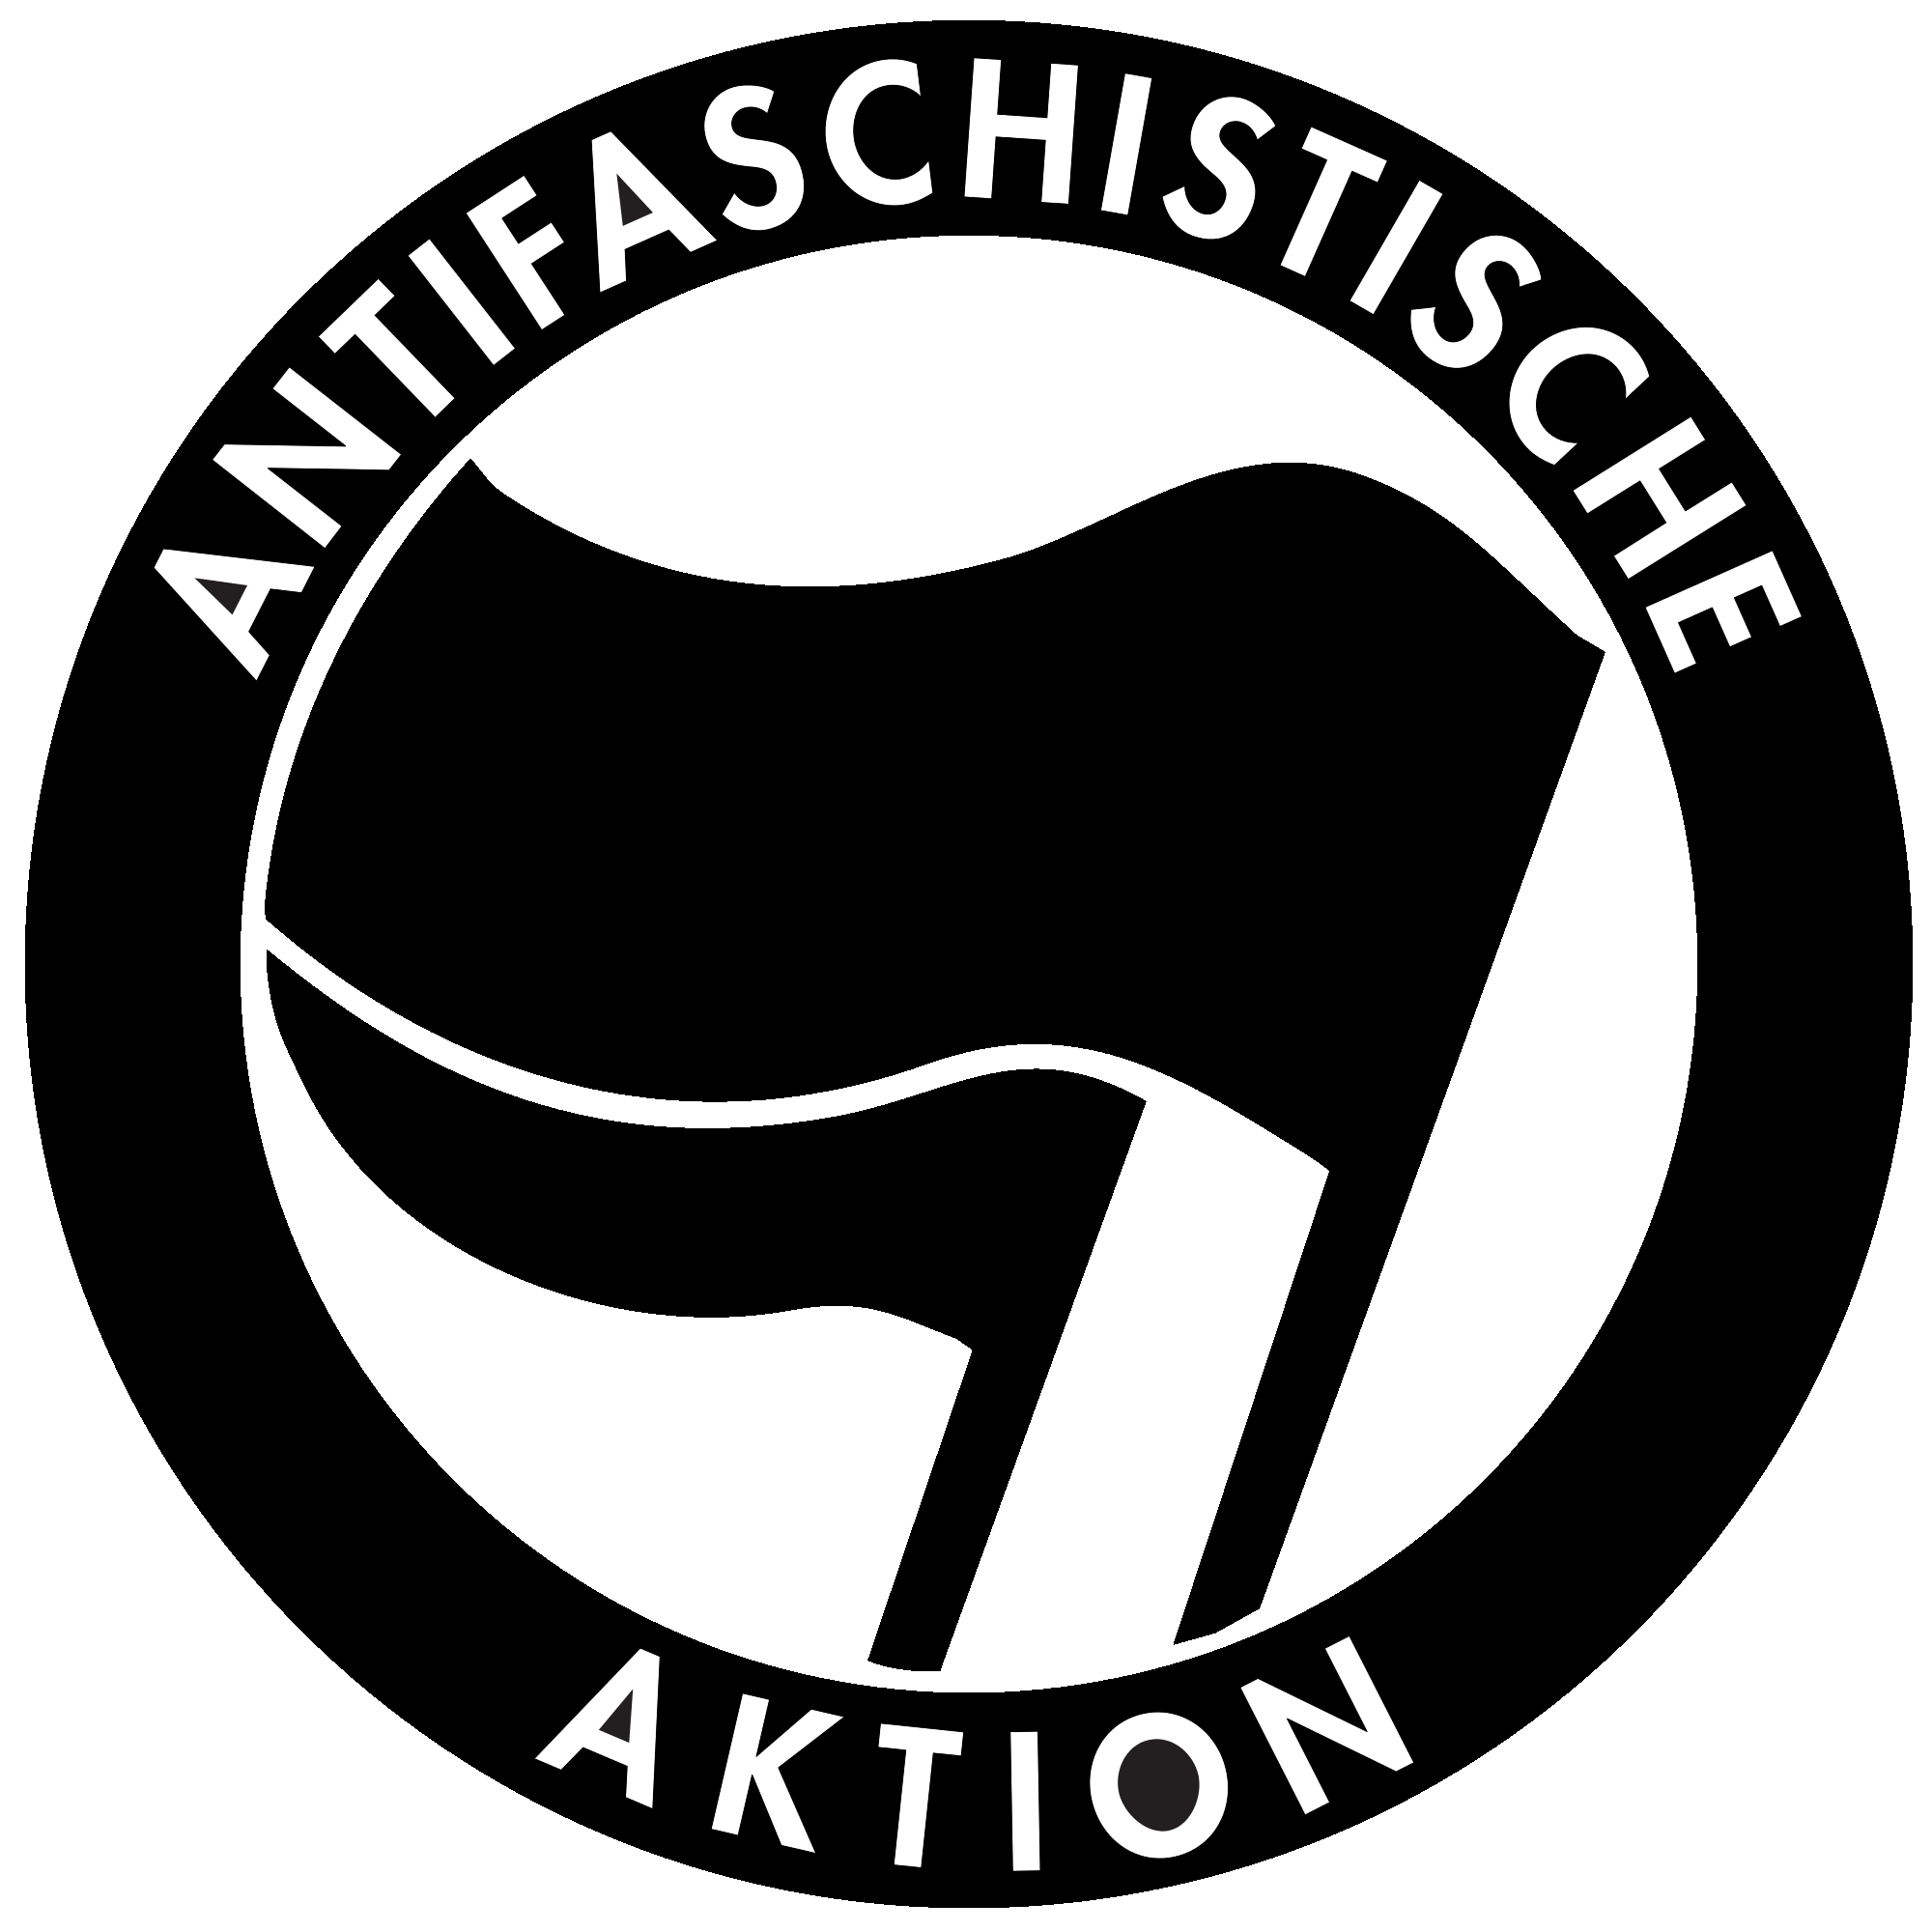 Antifa_logo.png